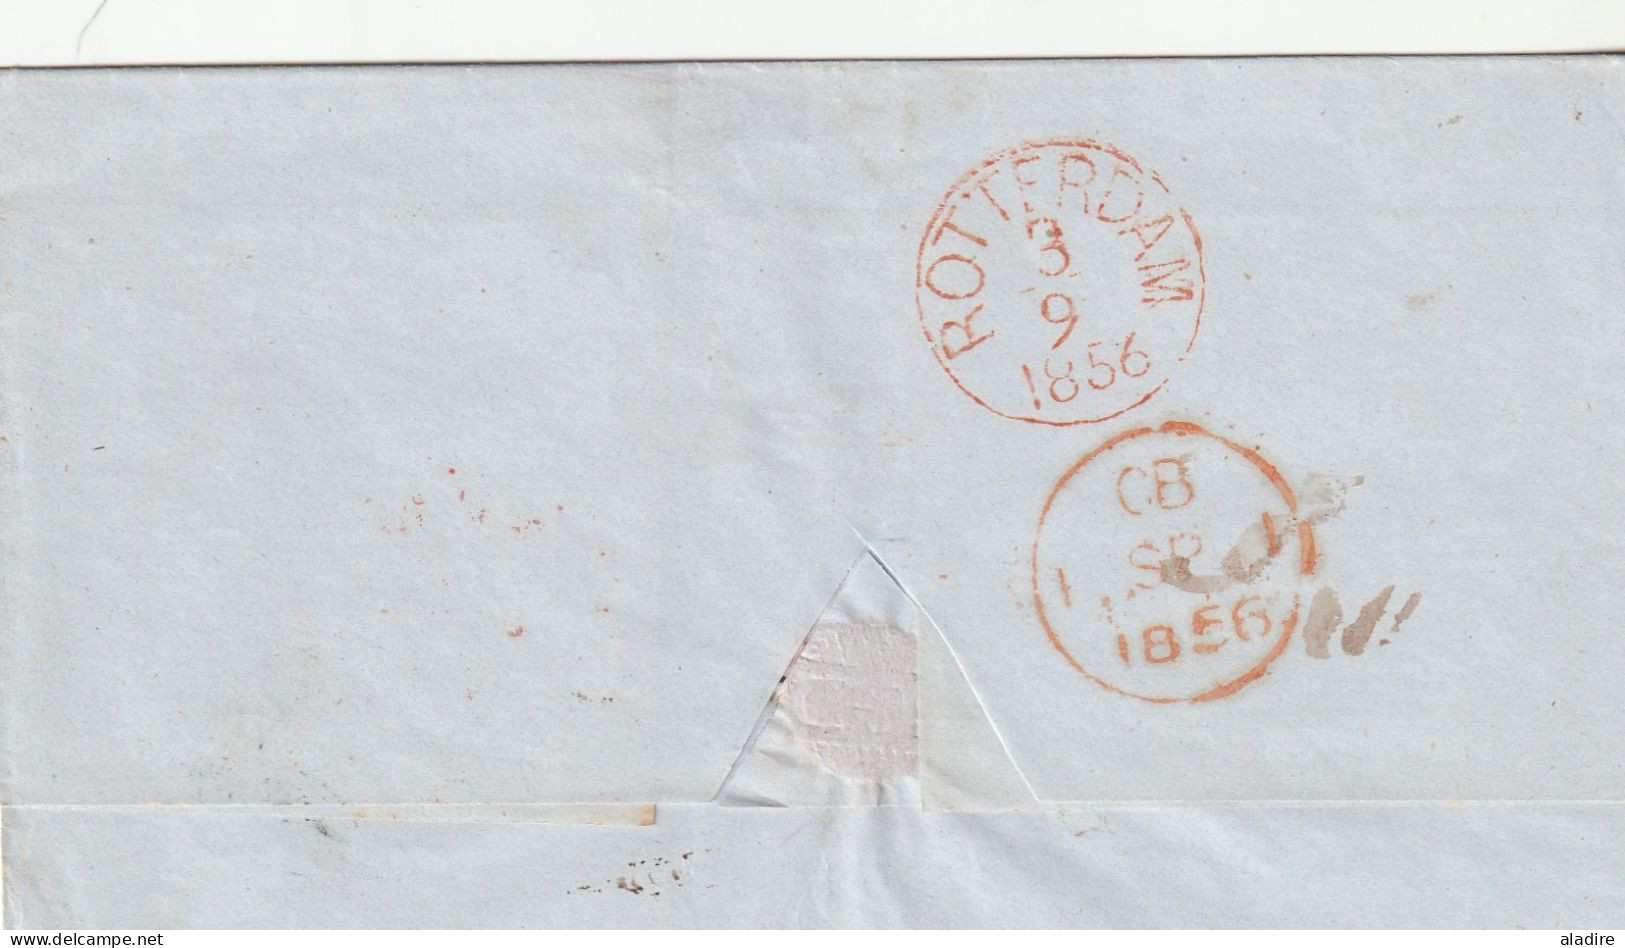 USA MARITIME 1851/1863 - lot de 6 lettres de New York, New Orleans & Saint Louis vers Paris, Havre, Rotterdam, Markinch